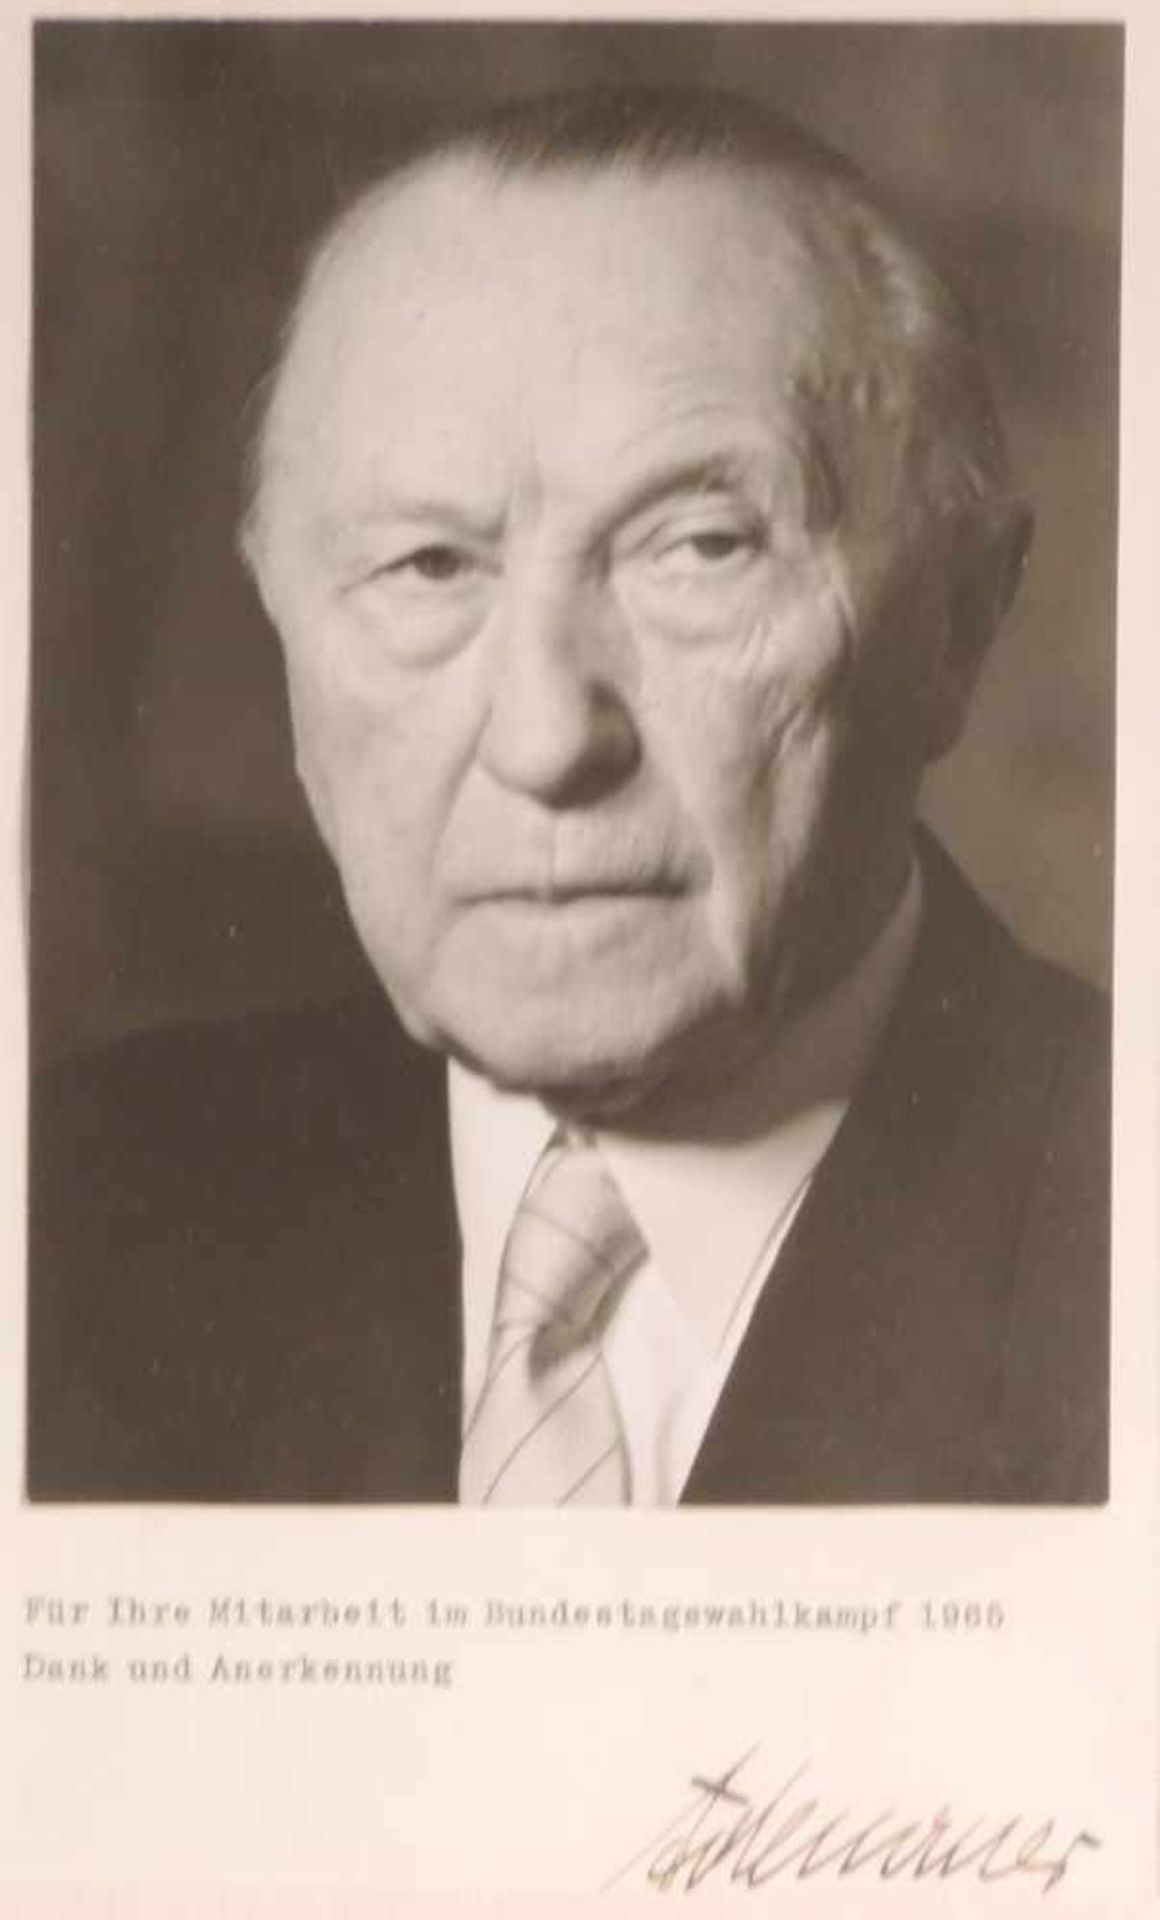 FOTOGRAPHIE, Brustportrait Konrad Adenauers, s/w, im Einfall Dotation: für Ihre Mitarbeit im